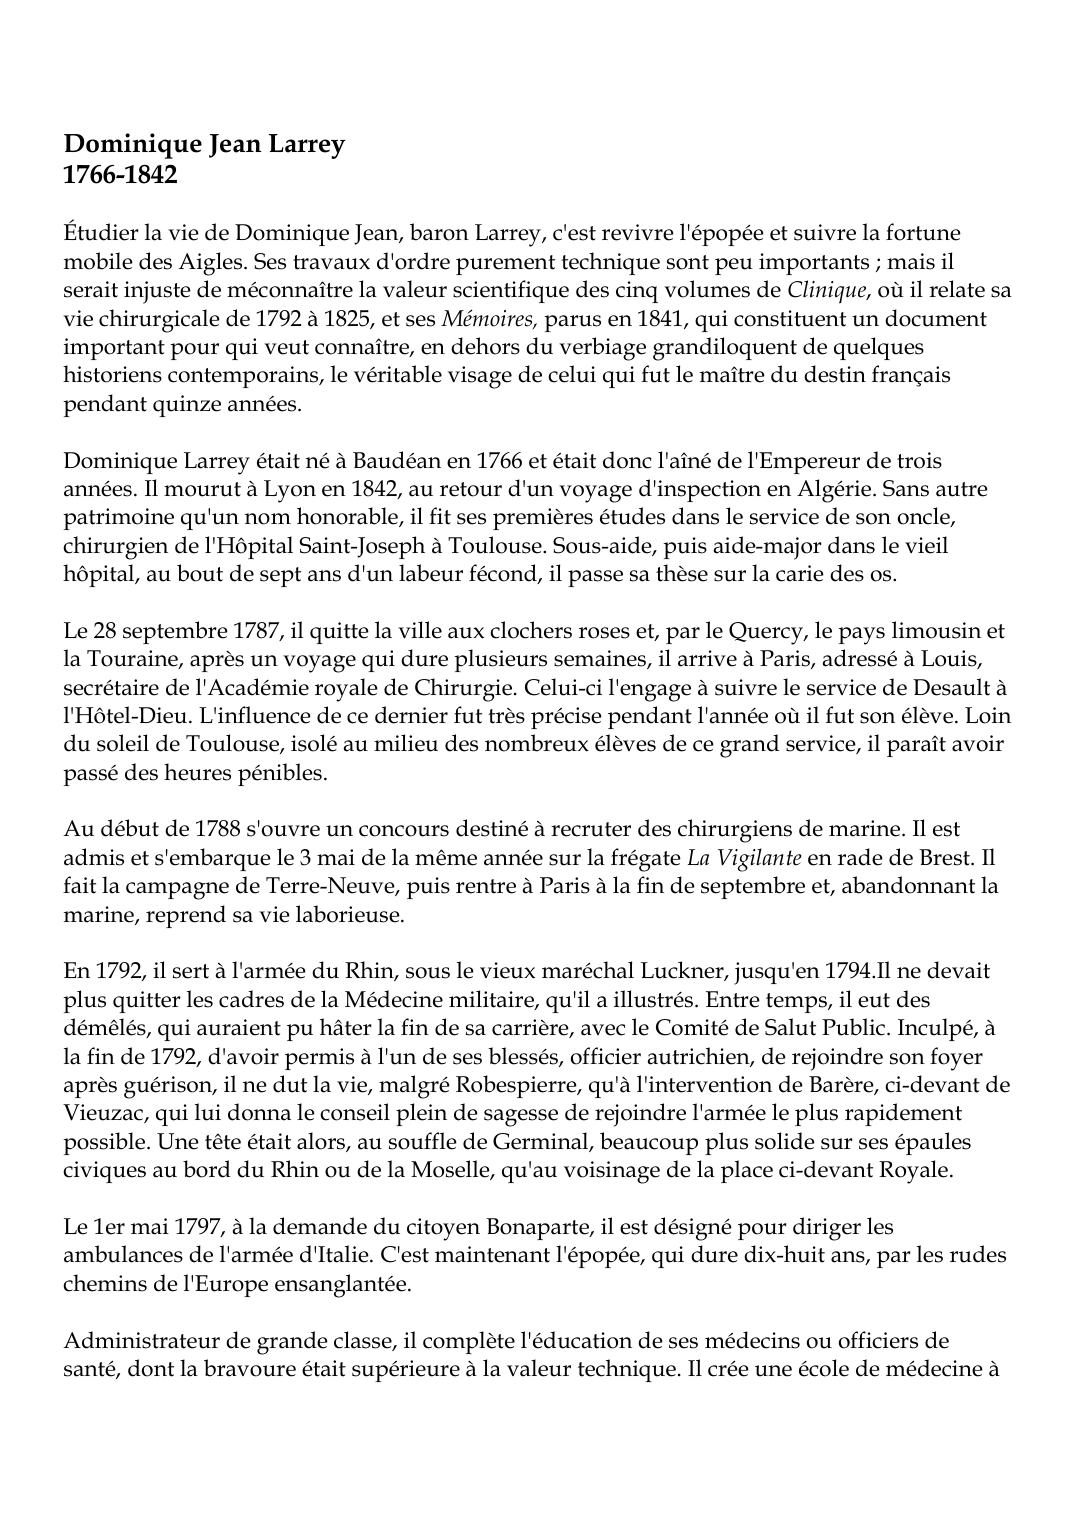 Prévisualisation du document Dominique Jean Larrey1766-1842Étudier la vie de Dominique Jean, baron Larrey, c'est revivre l'épopée et suivre la fortunemobile des Aigles.